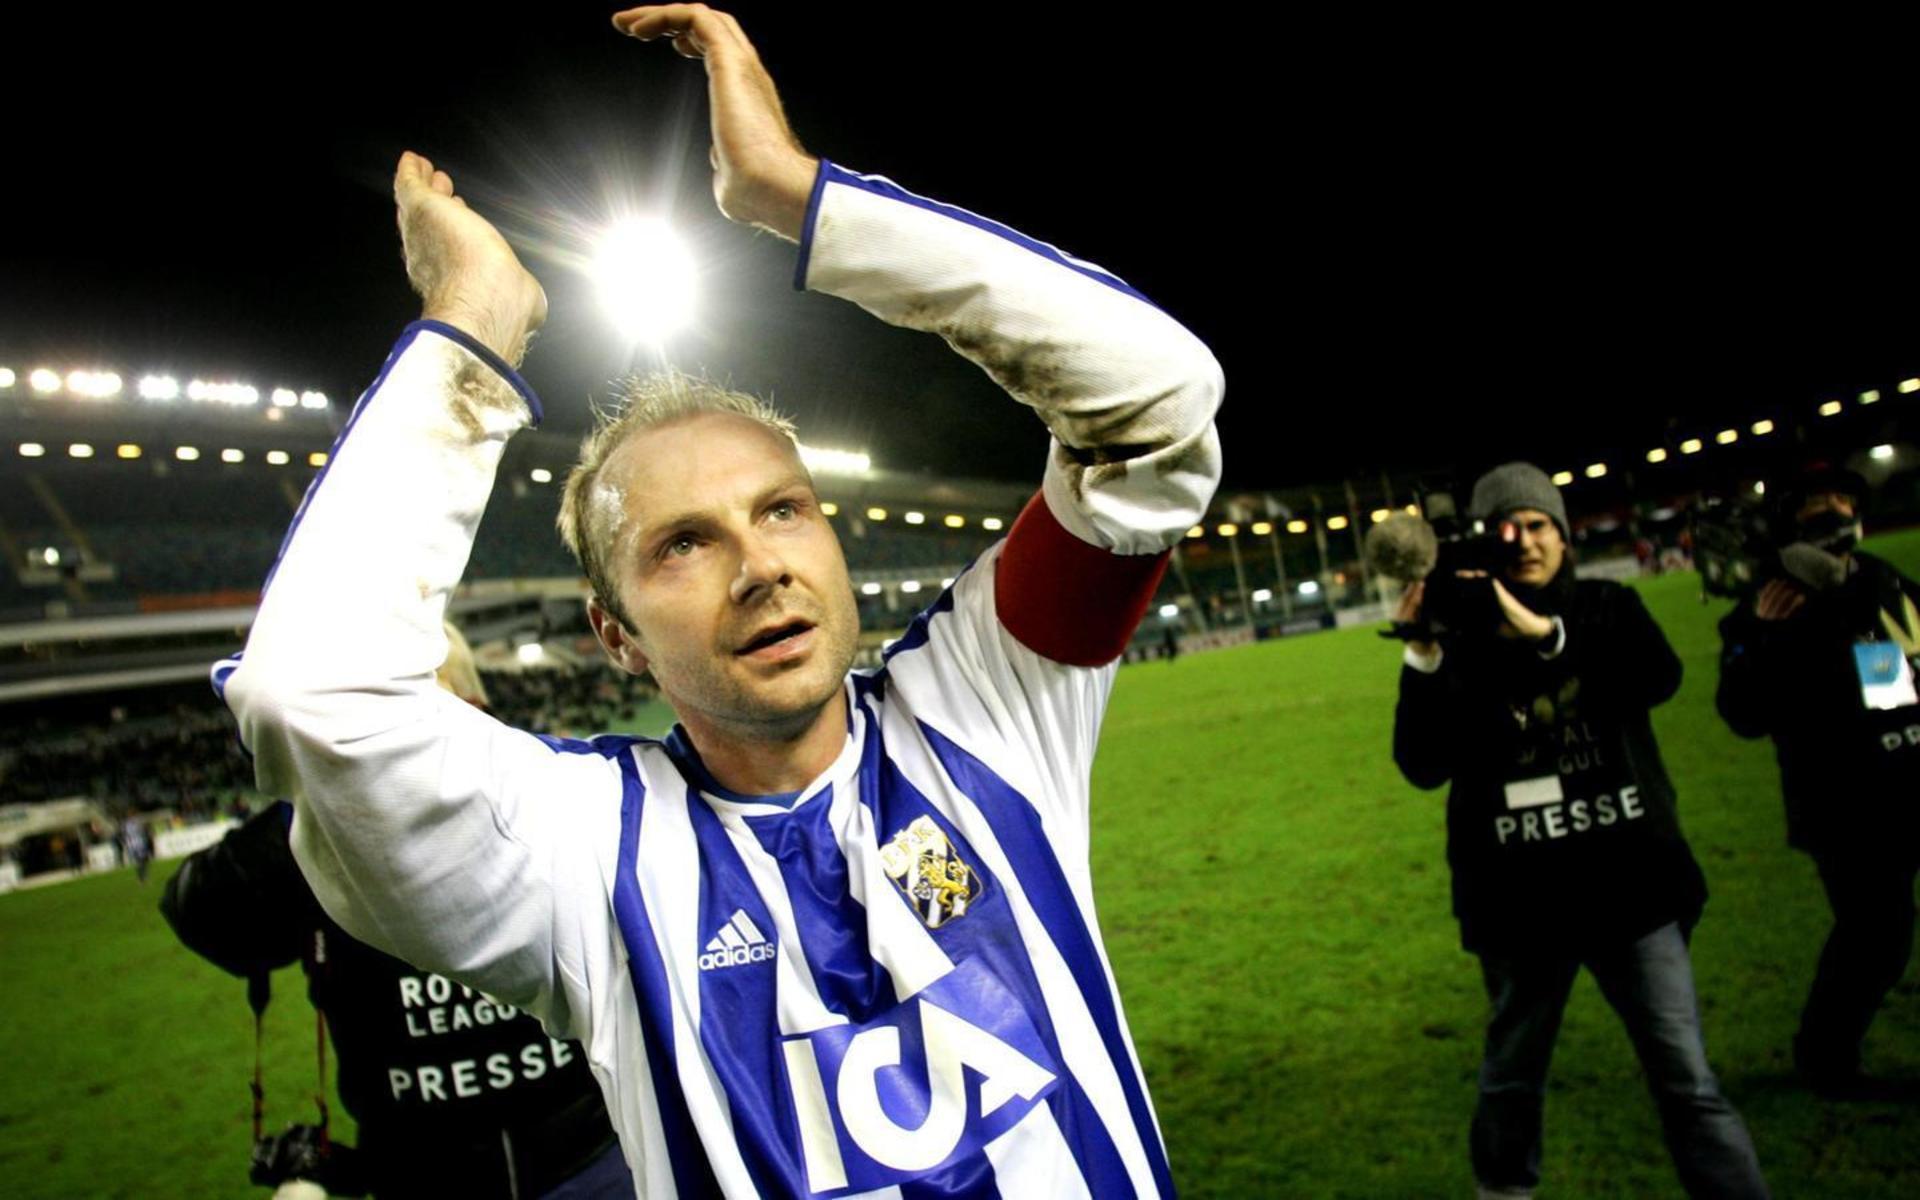 Royal League-mötet med Lyn 2005 blev Håkan Milds sista match som spelare i IFK Göteborg.